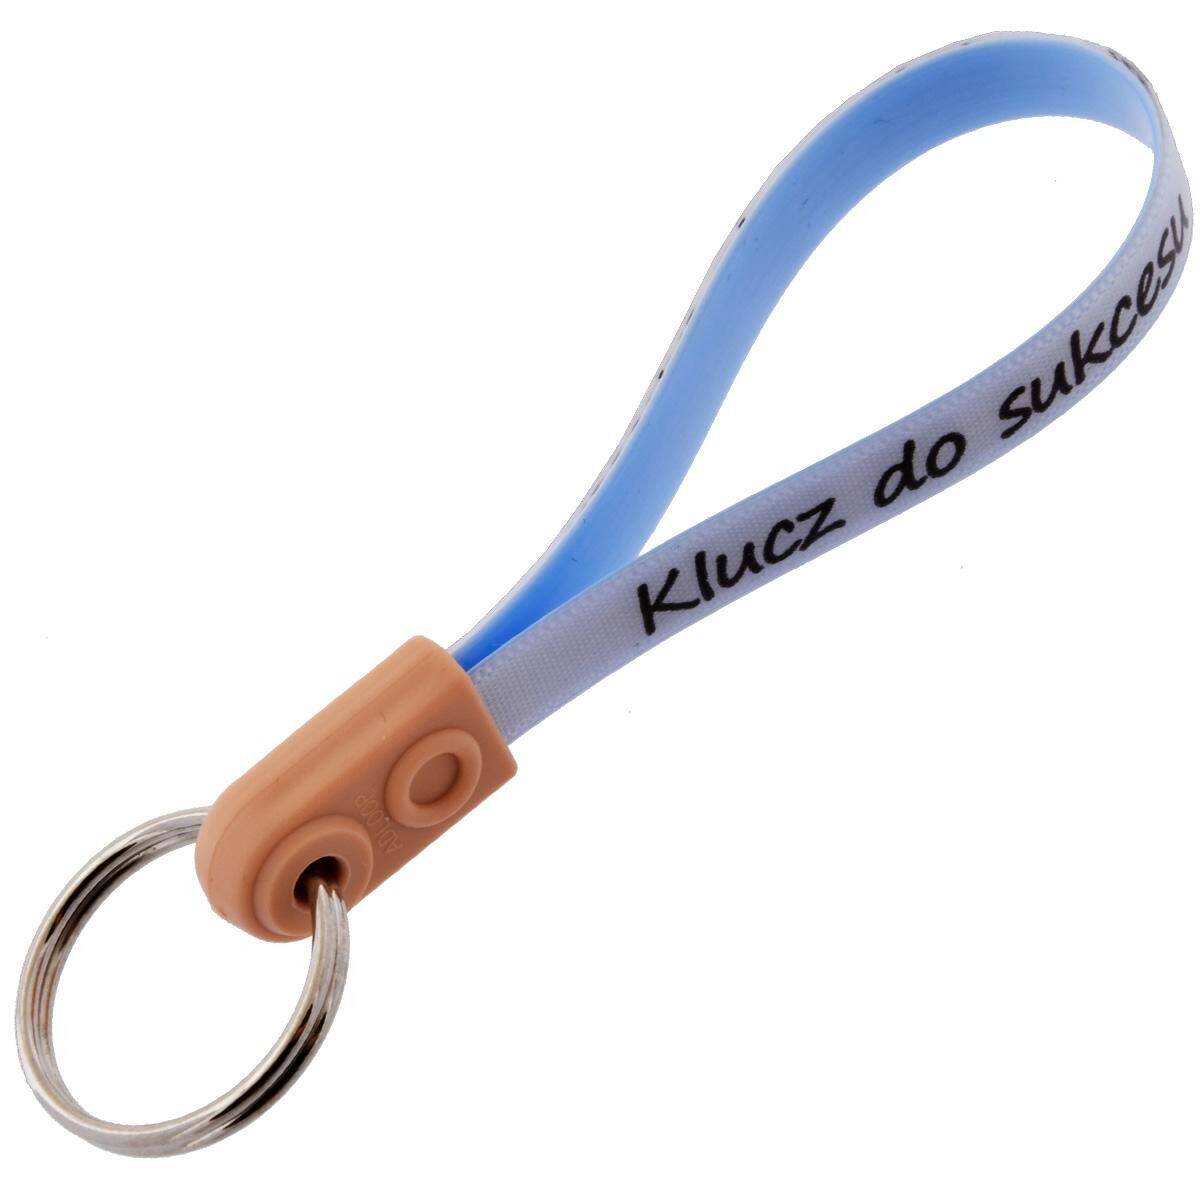 Schlüsselanhänger mit gürtel - KLUCZ DO SUKCESU